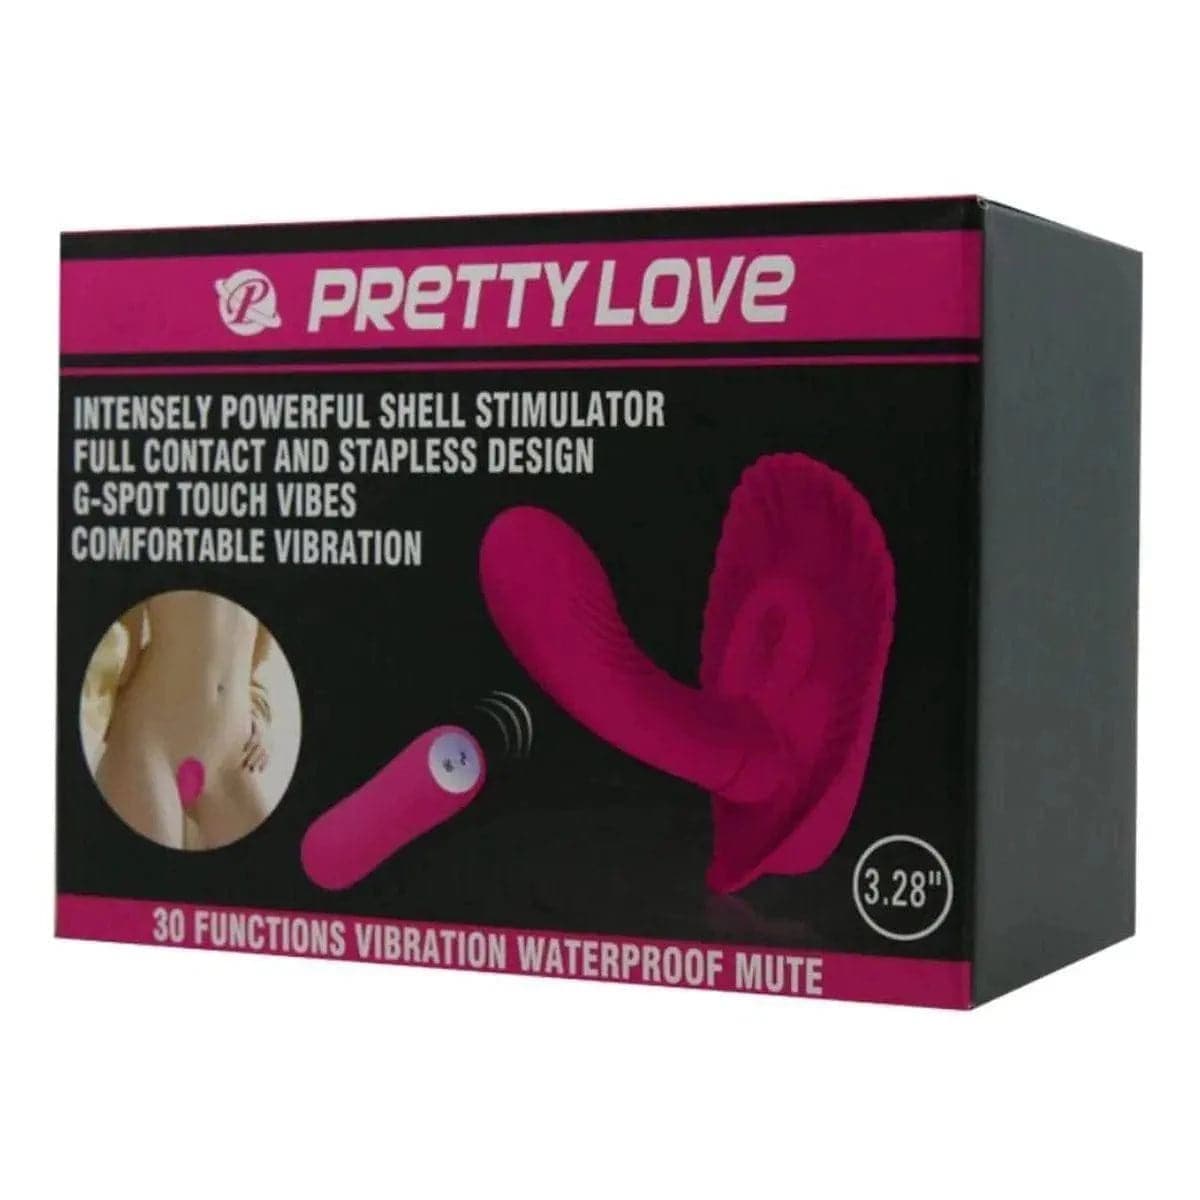 Estimulador Concha Pretty Love, Controlo Remoto, 12.5cm Ø2.9cm, 30vibrações - Pérola SexShop